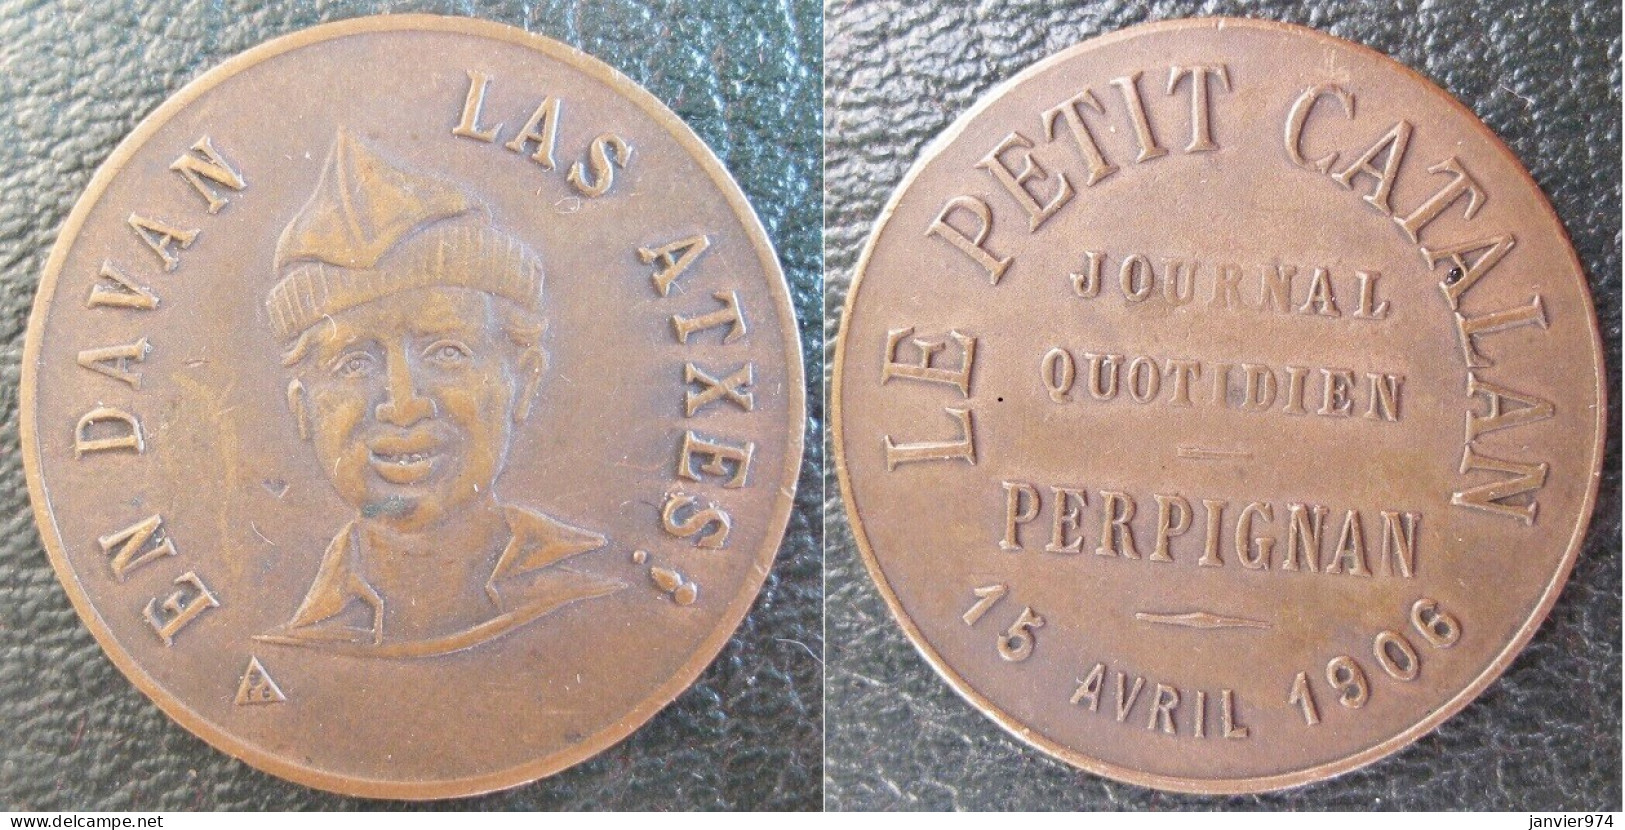 Médaille En Cuivre Le Petit Catalan, Journal Quotidien Perpignan 1906 . EN DAVAN LAS ATXES - Professionals / Firms